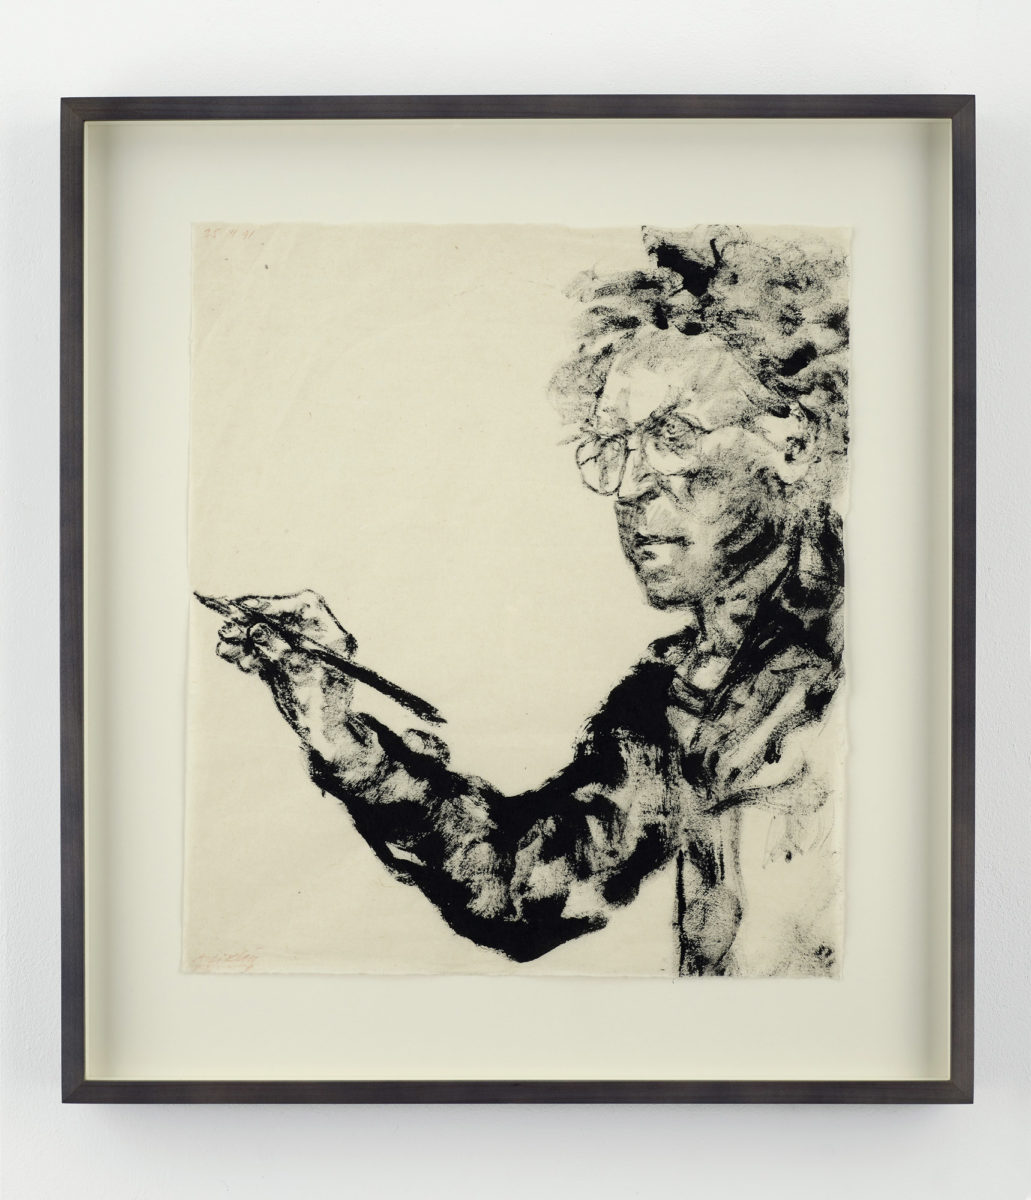 Αβιγκντόρ Αρίκα, «Αυτοπροσωπογραφία», 1991, μελάνι σε χαρτί, 39x34 εκ. (φωτ. Mathew Hollow).